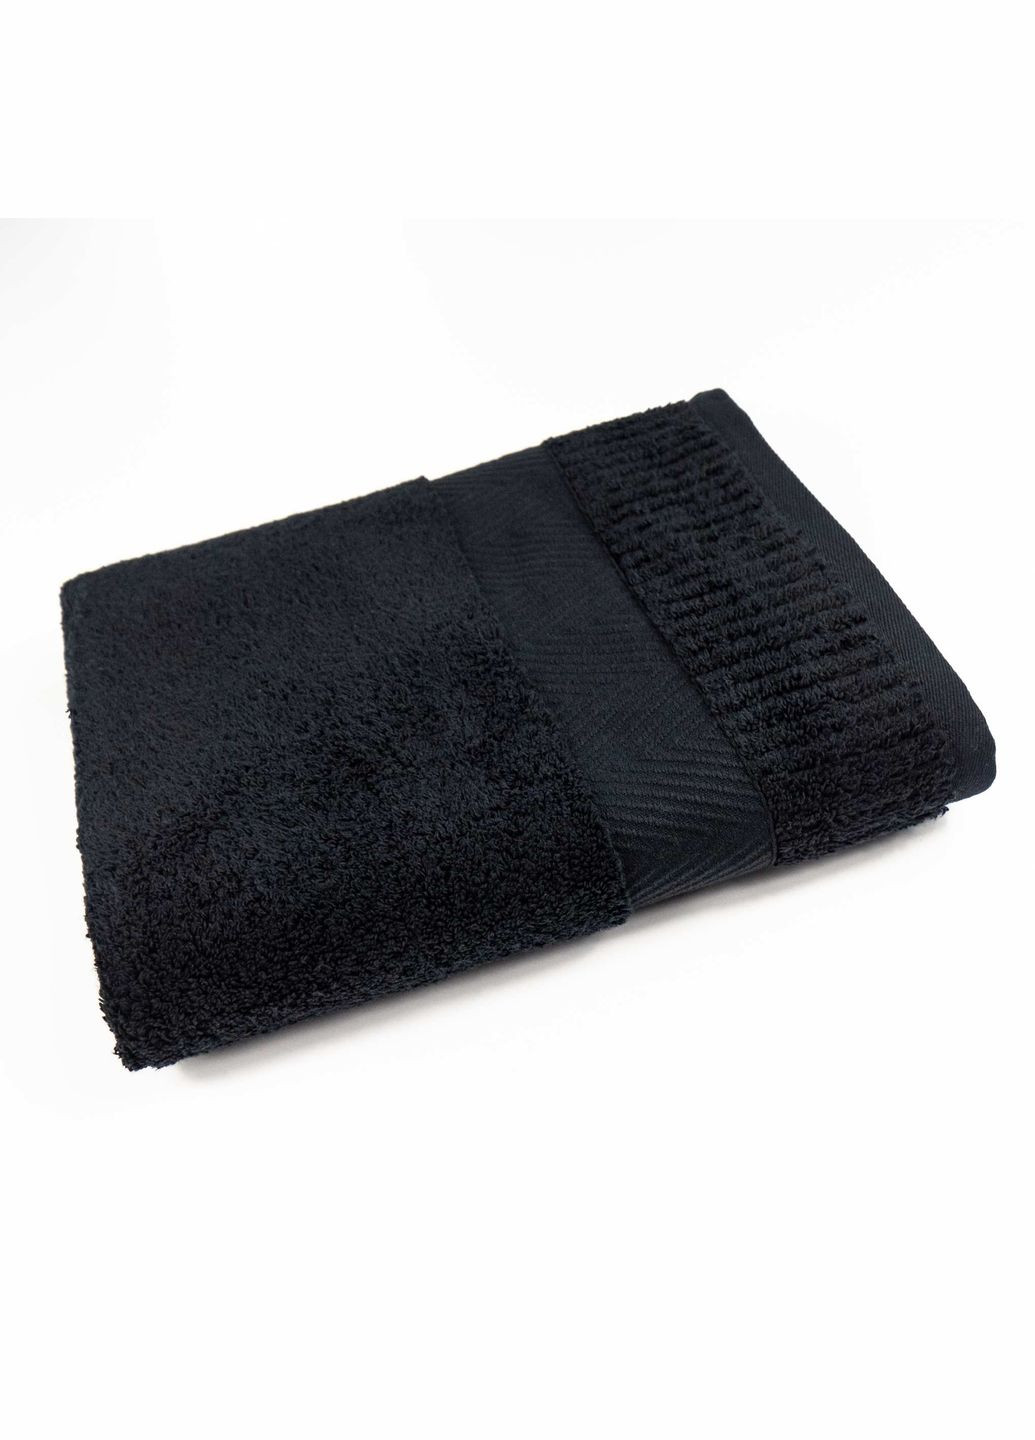 GM Textile махровое полотенце 50x90см премиум качества зеро твист бордюр 550г/м2 () черный производство -